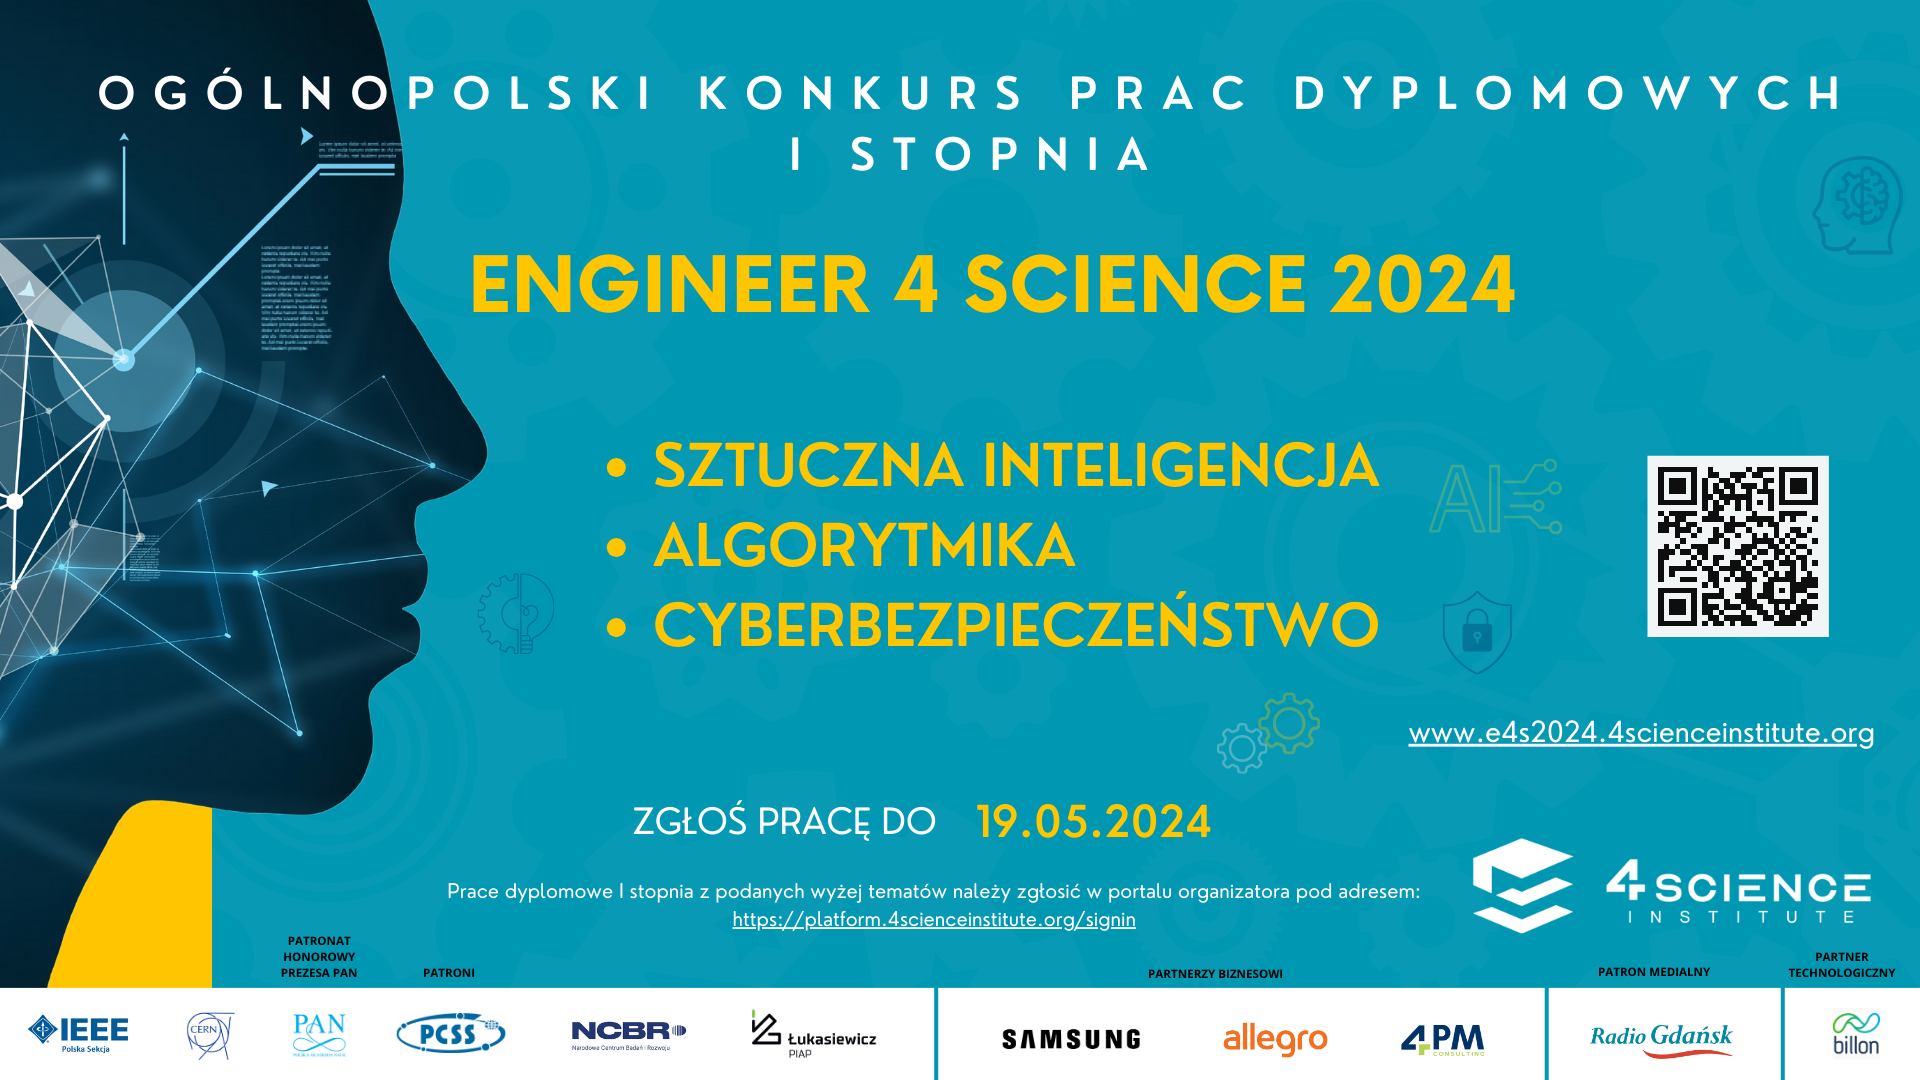 Ogólnopolski Konkurs Prac Dyplomowych I stopnia - Sztuczna inteligencja, algorytmika, cyberbezpieczeństwo. Zgłoś pracę do 19 maja 2024 r.